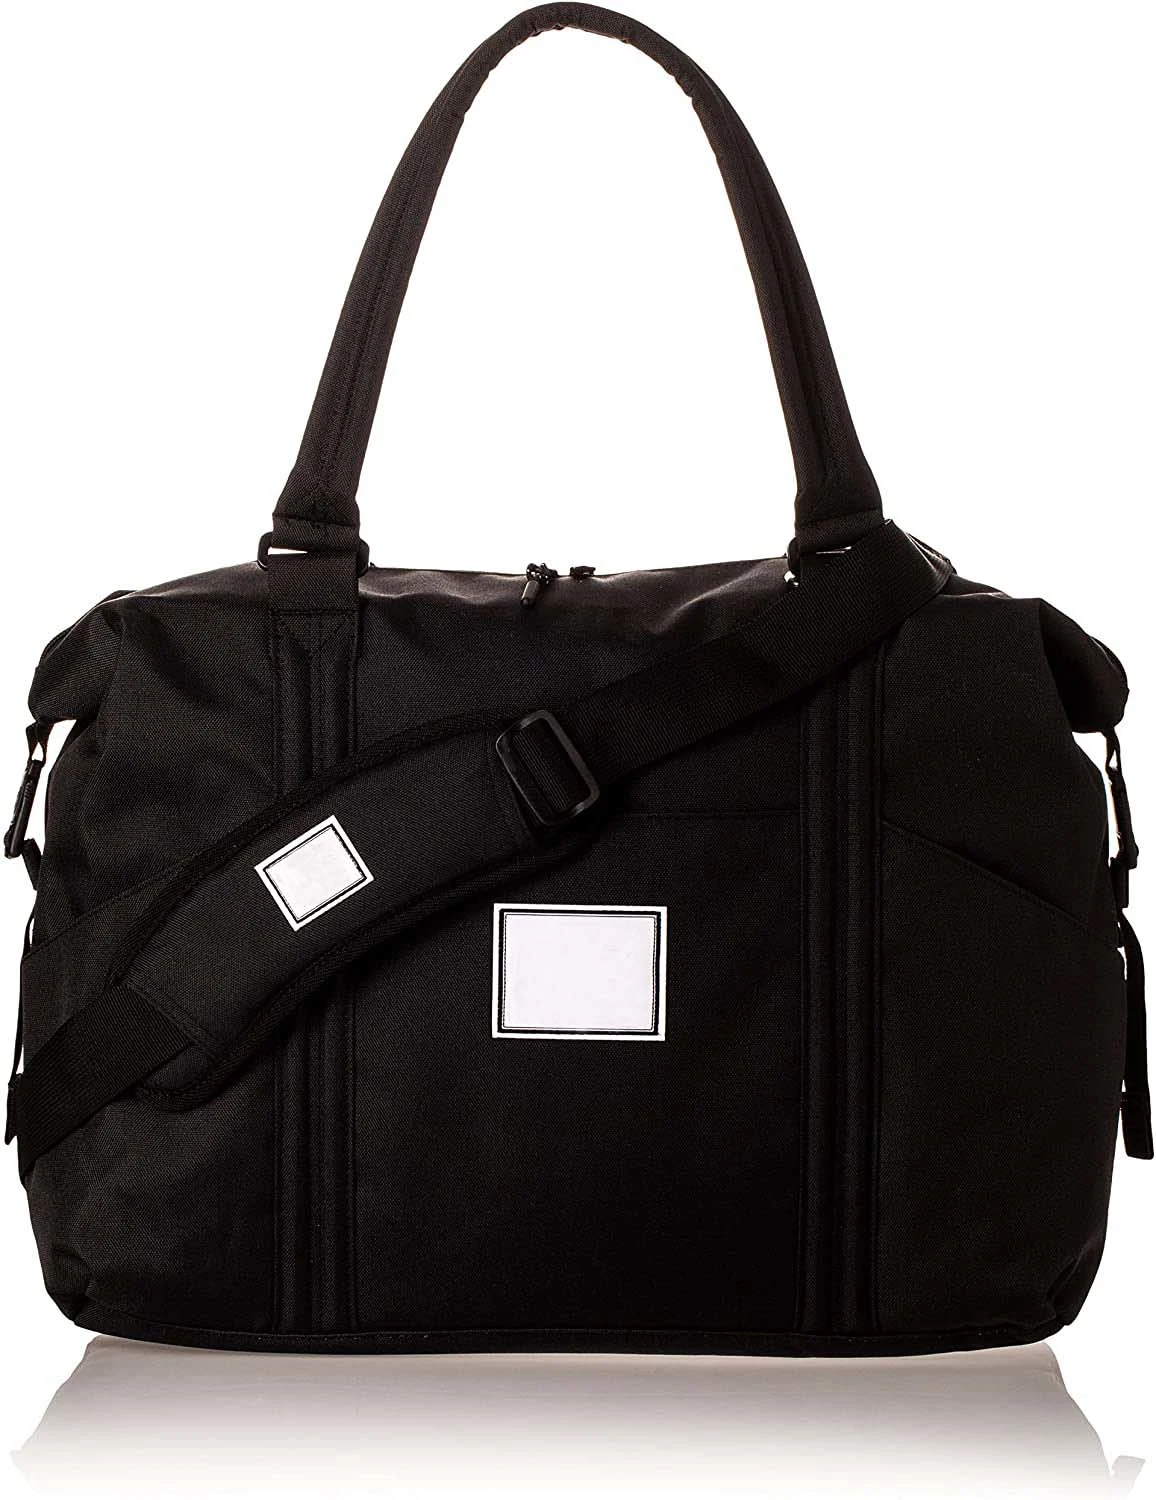 Baby Strand Sprout Shoulder Bag Black; Travel Bag; Shopping Bag;